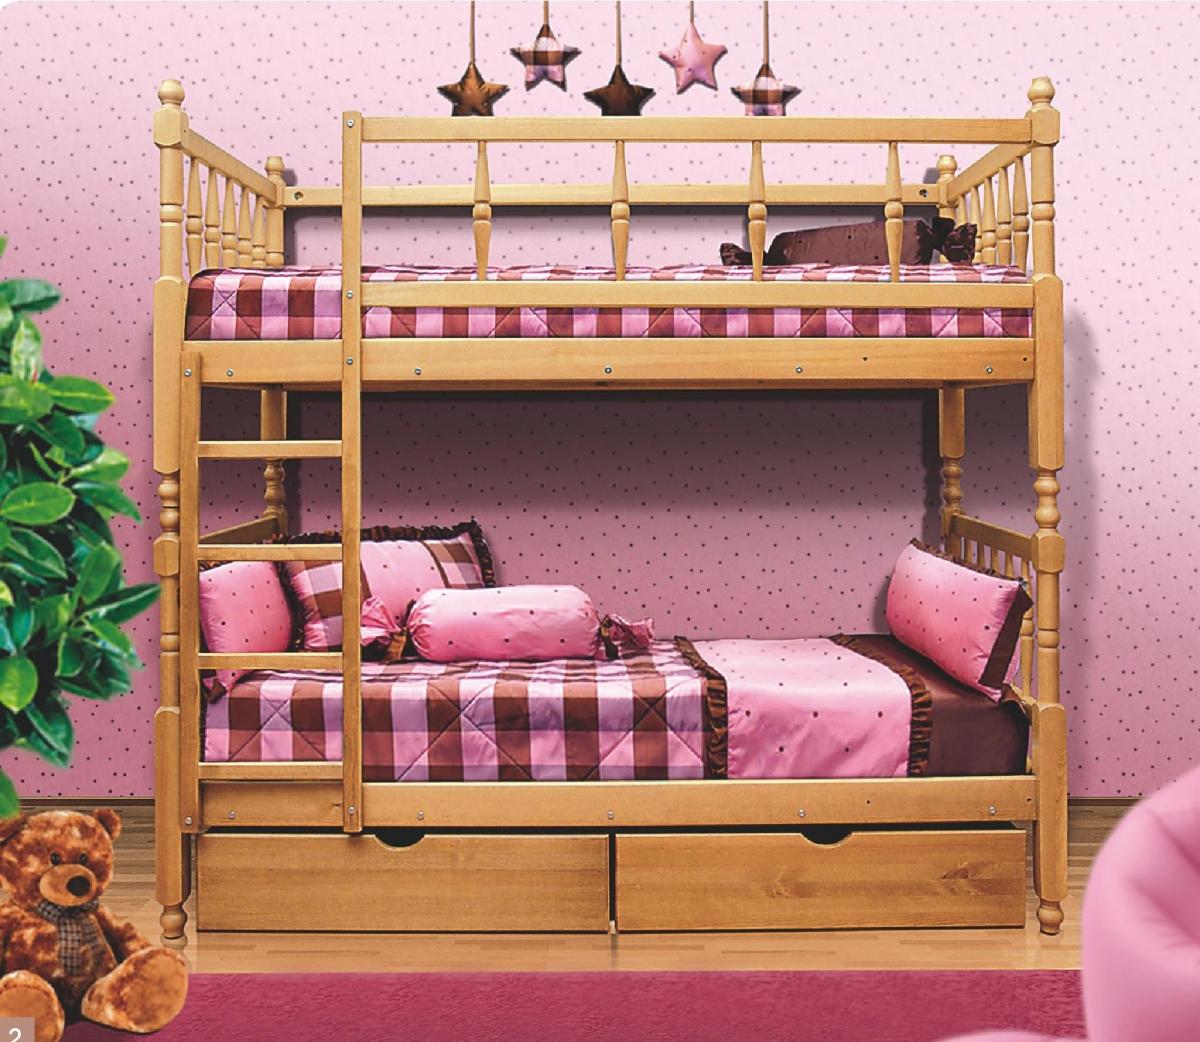 łóżko piętrowe w pokoju dziecięcym w stylu shebby chic